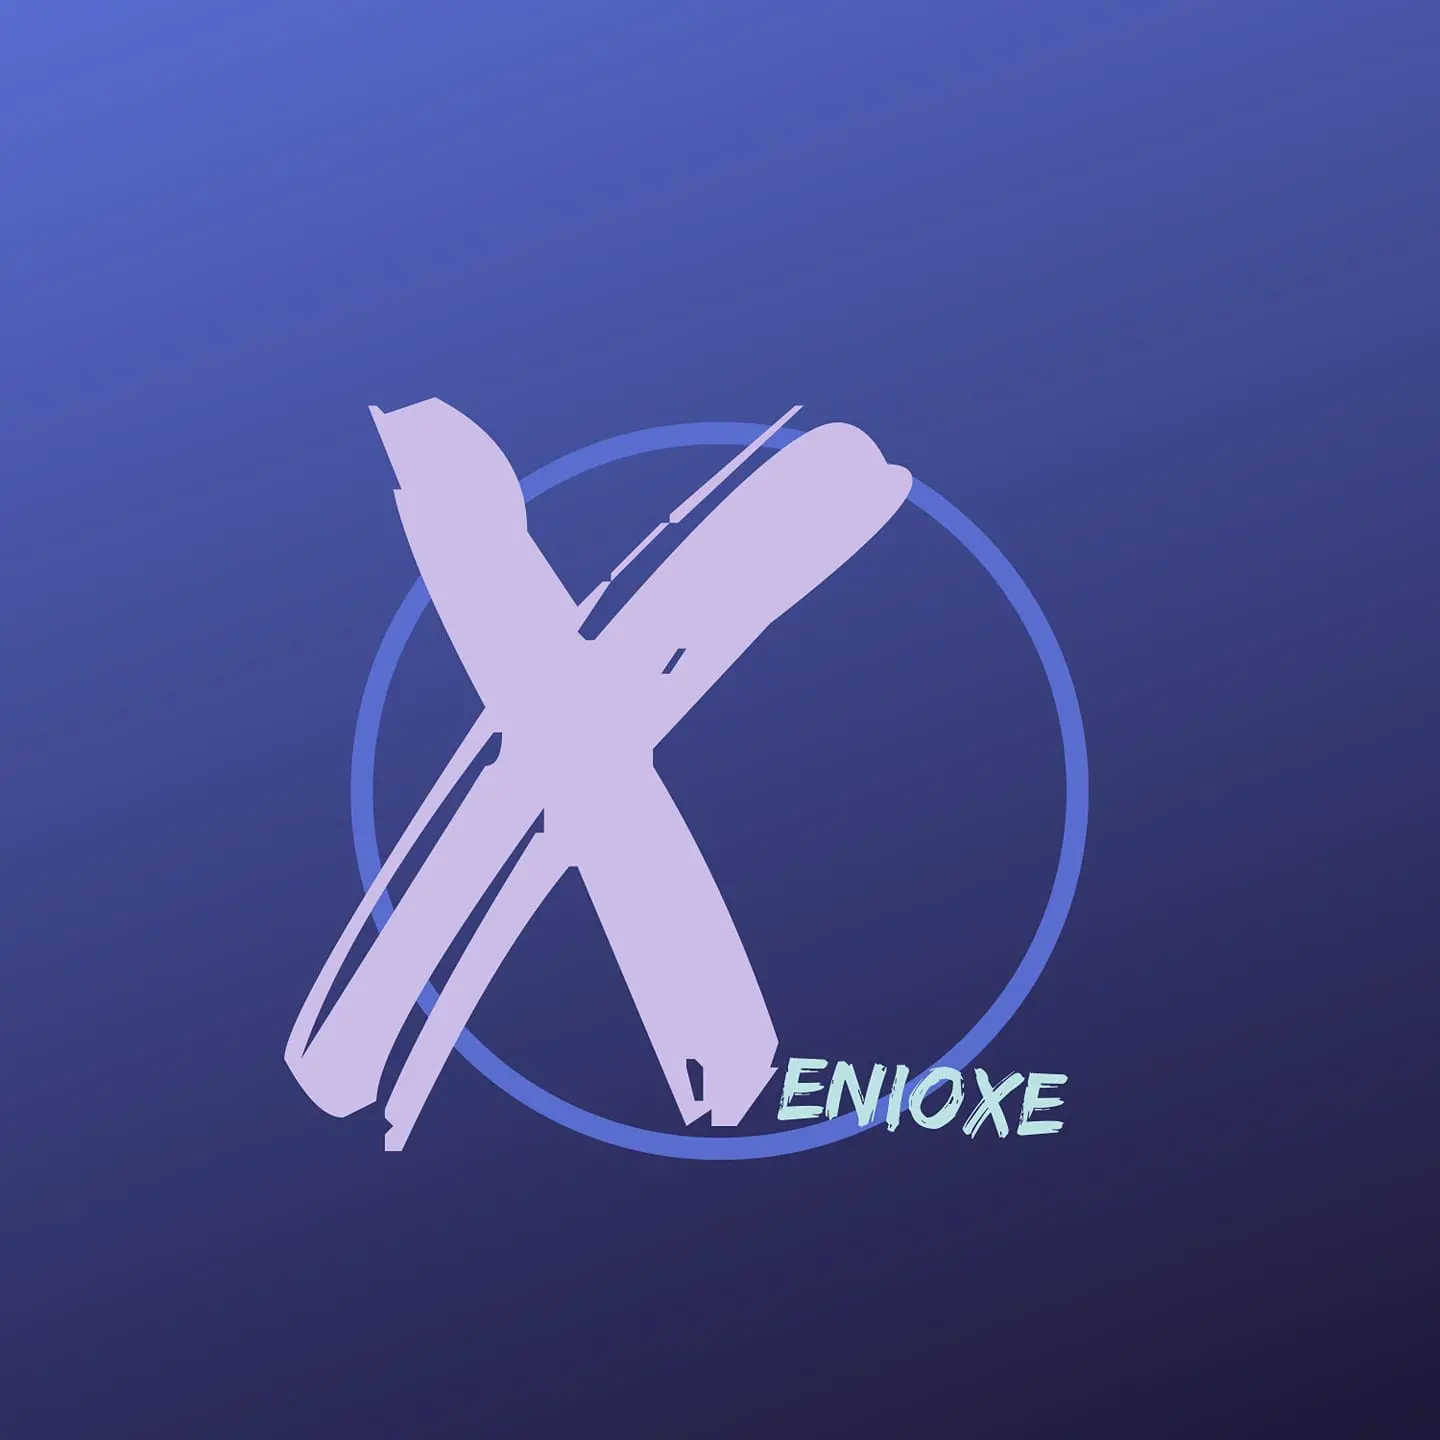 Progressive atmospheric producer, Xenioxe